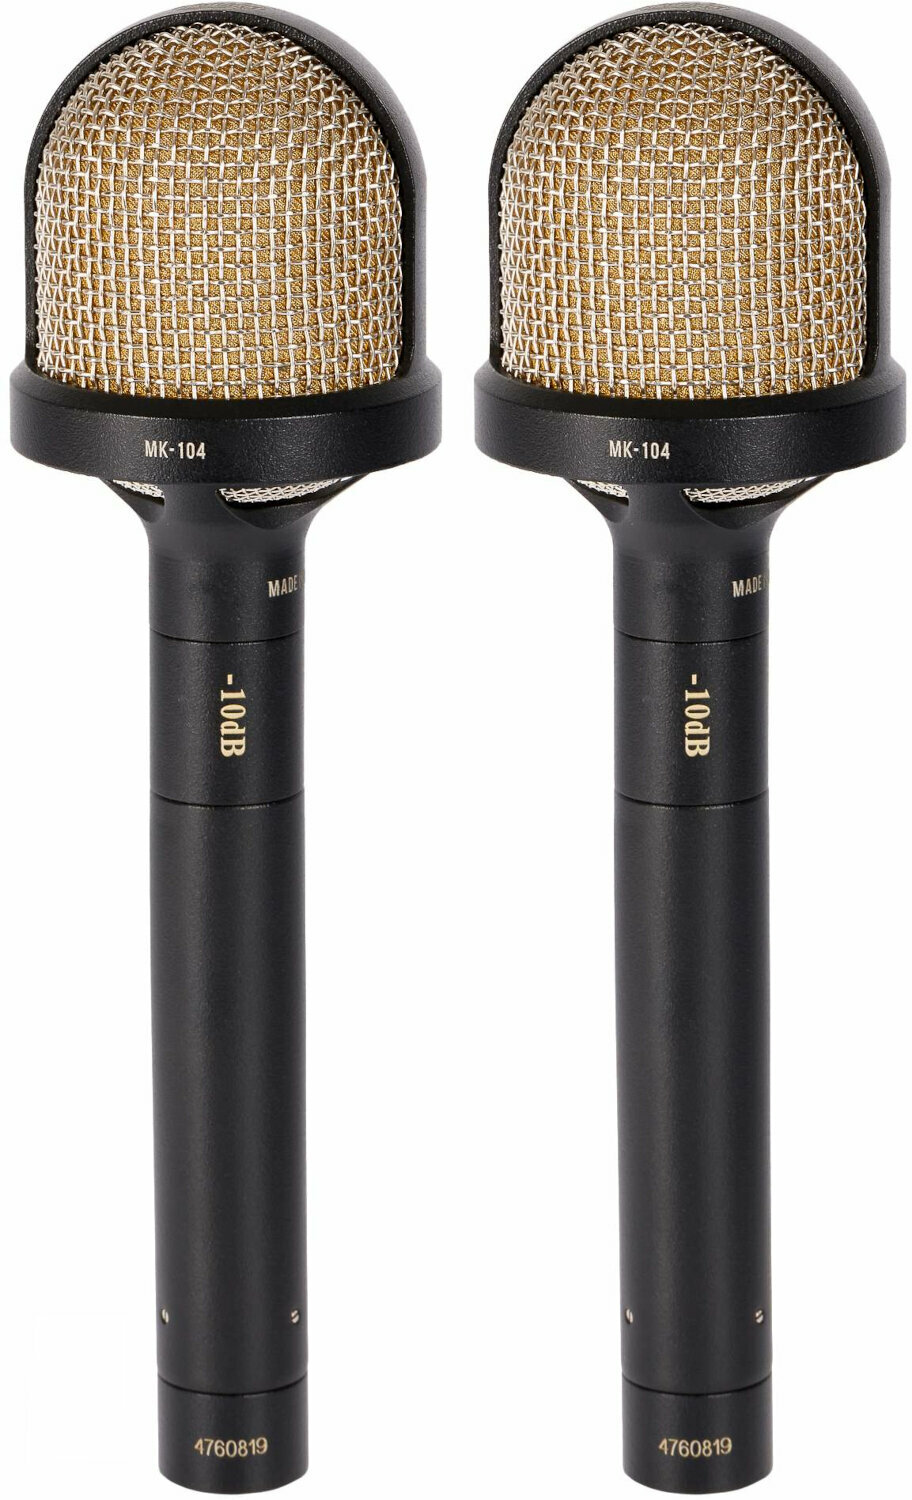 Microfone condensador de estúdio Oktava MK-104 Matched Pair BK Microfone condensador de estúdio